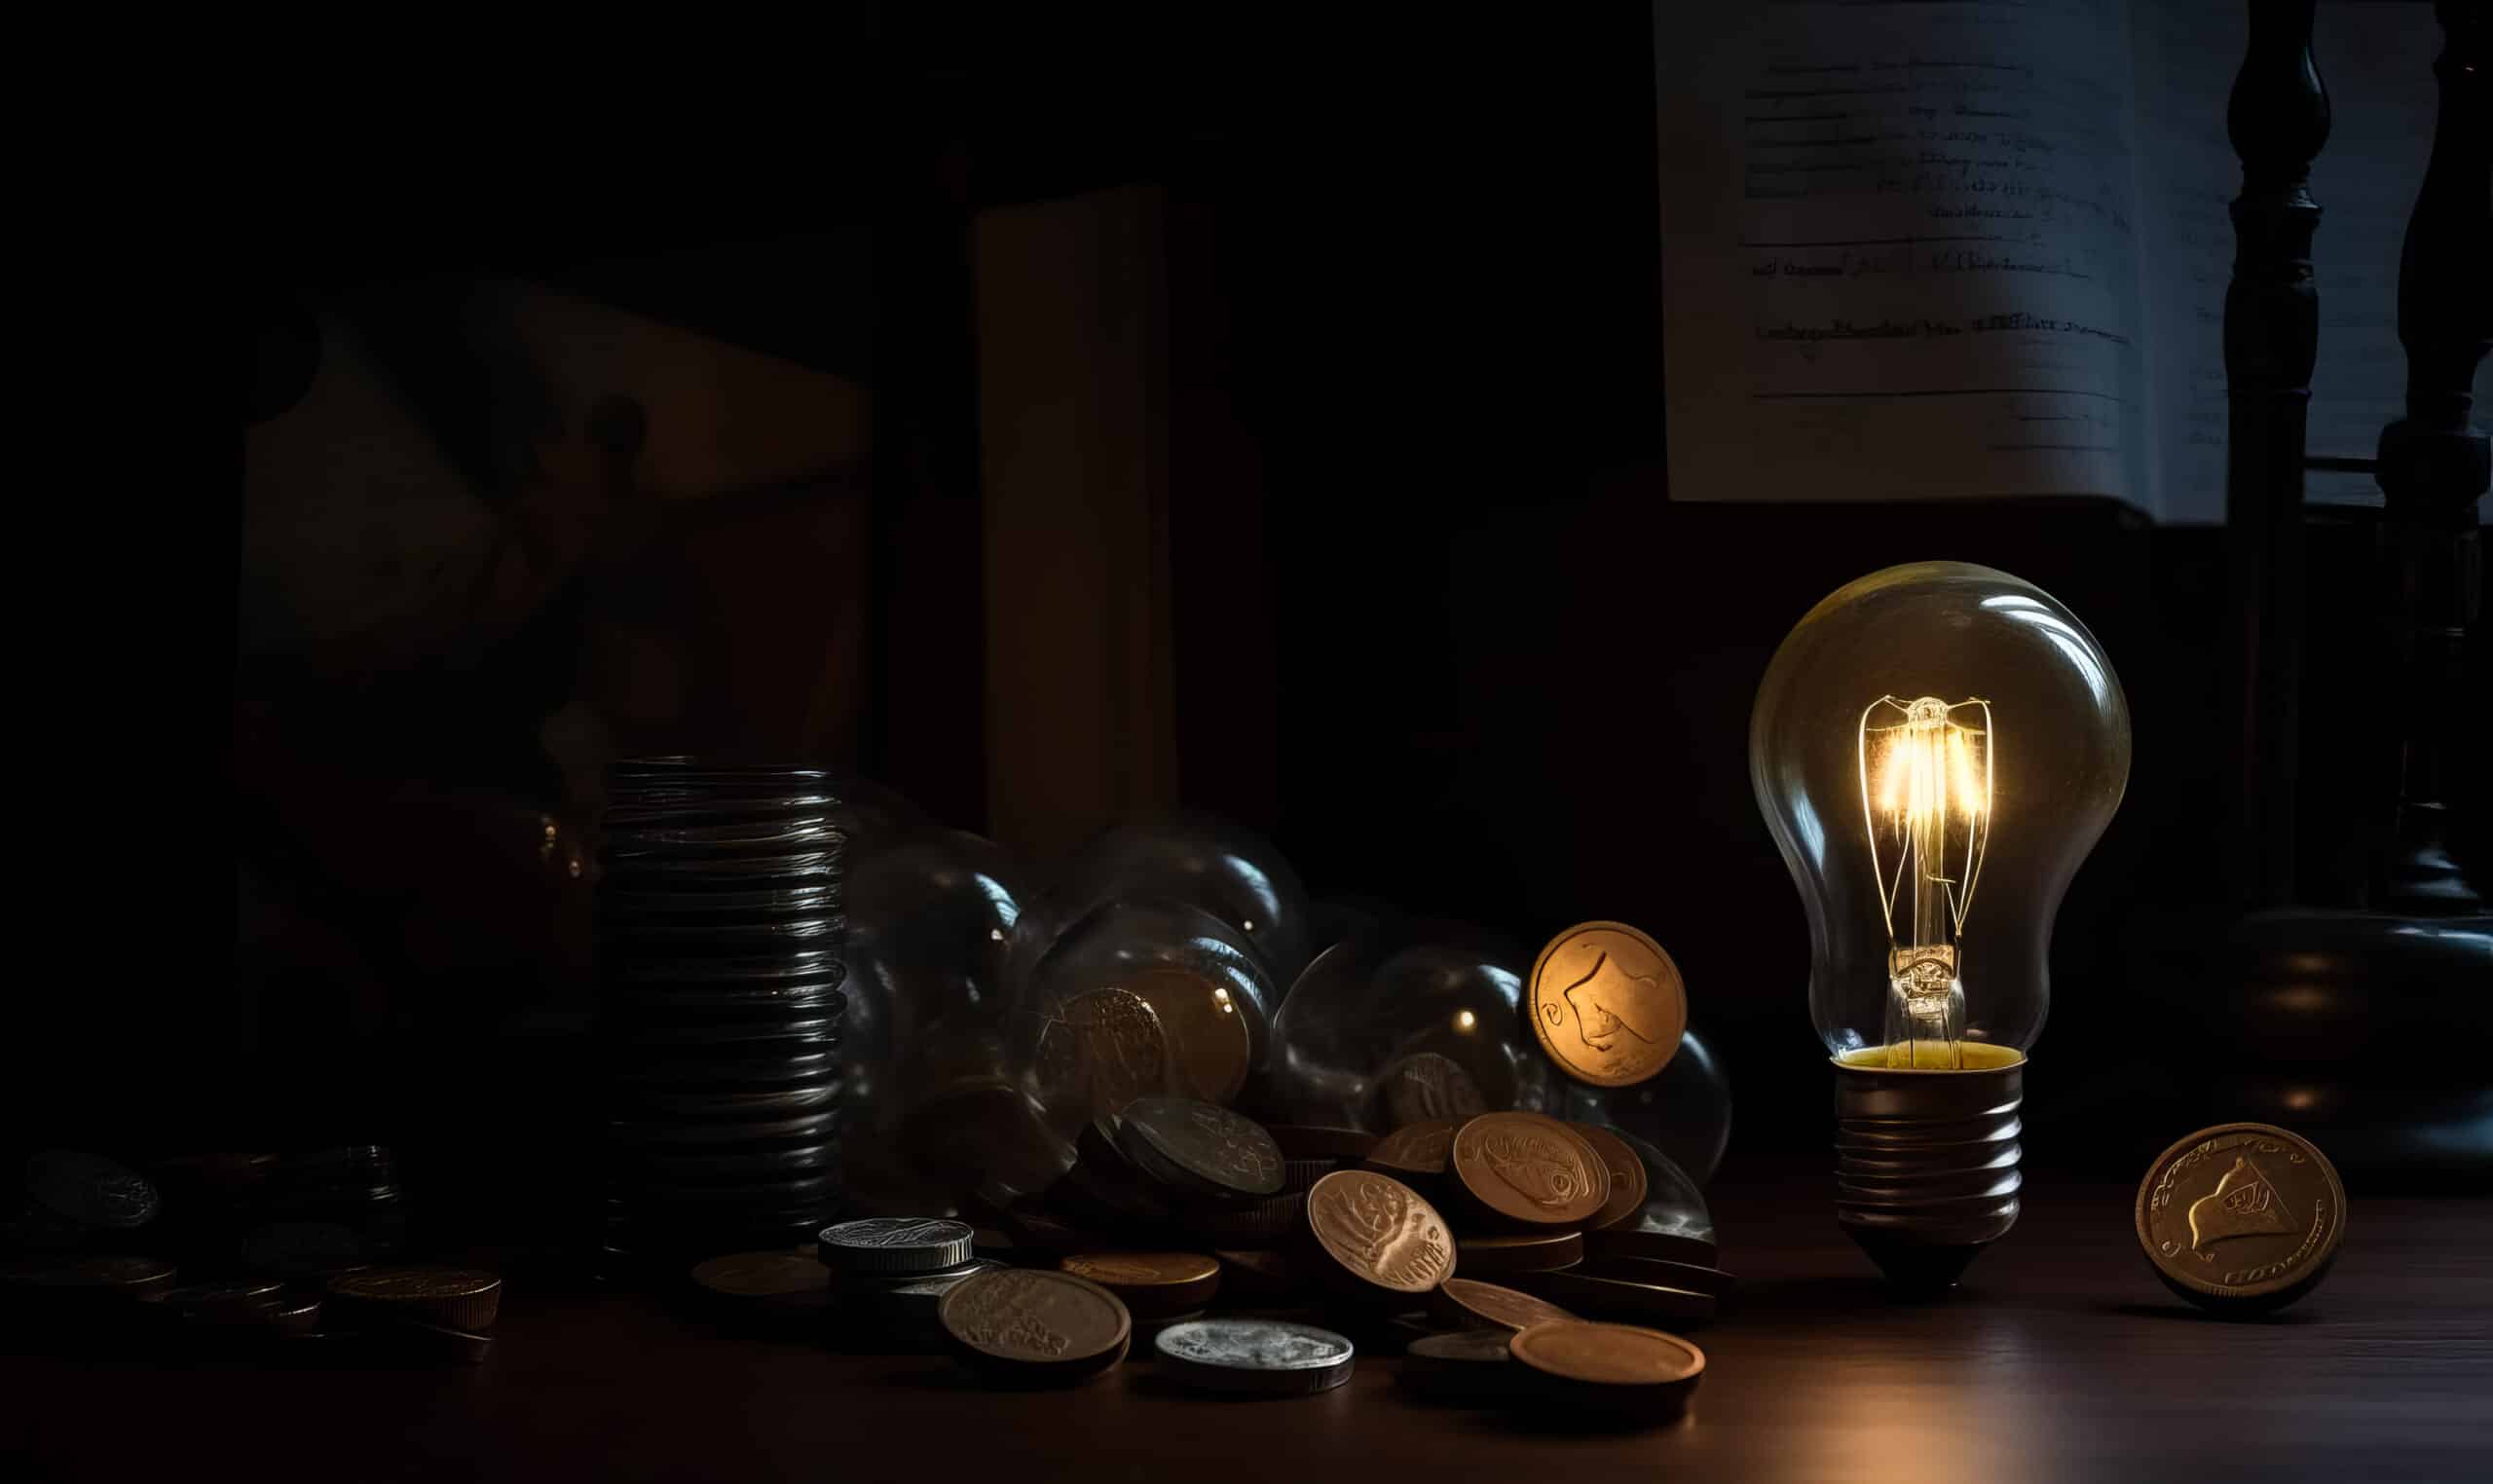 www.appr.com : Do Smart Lights Save Money?